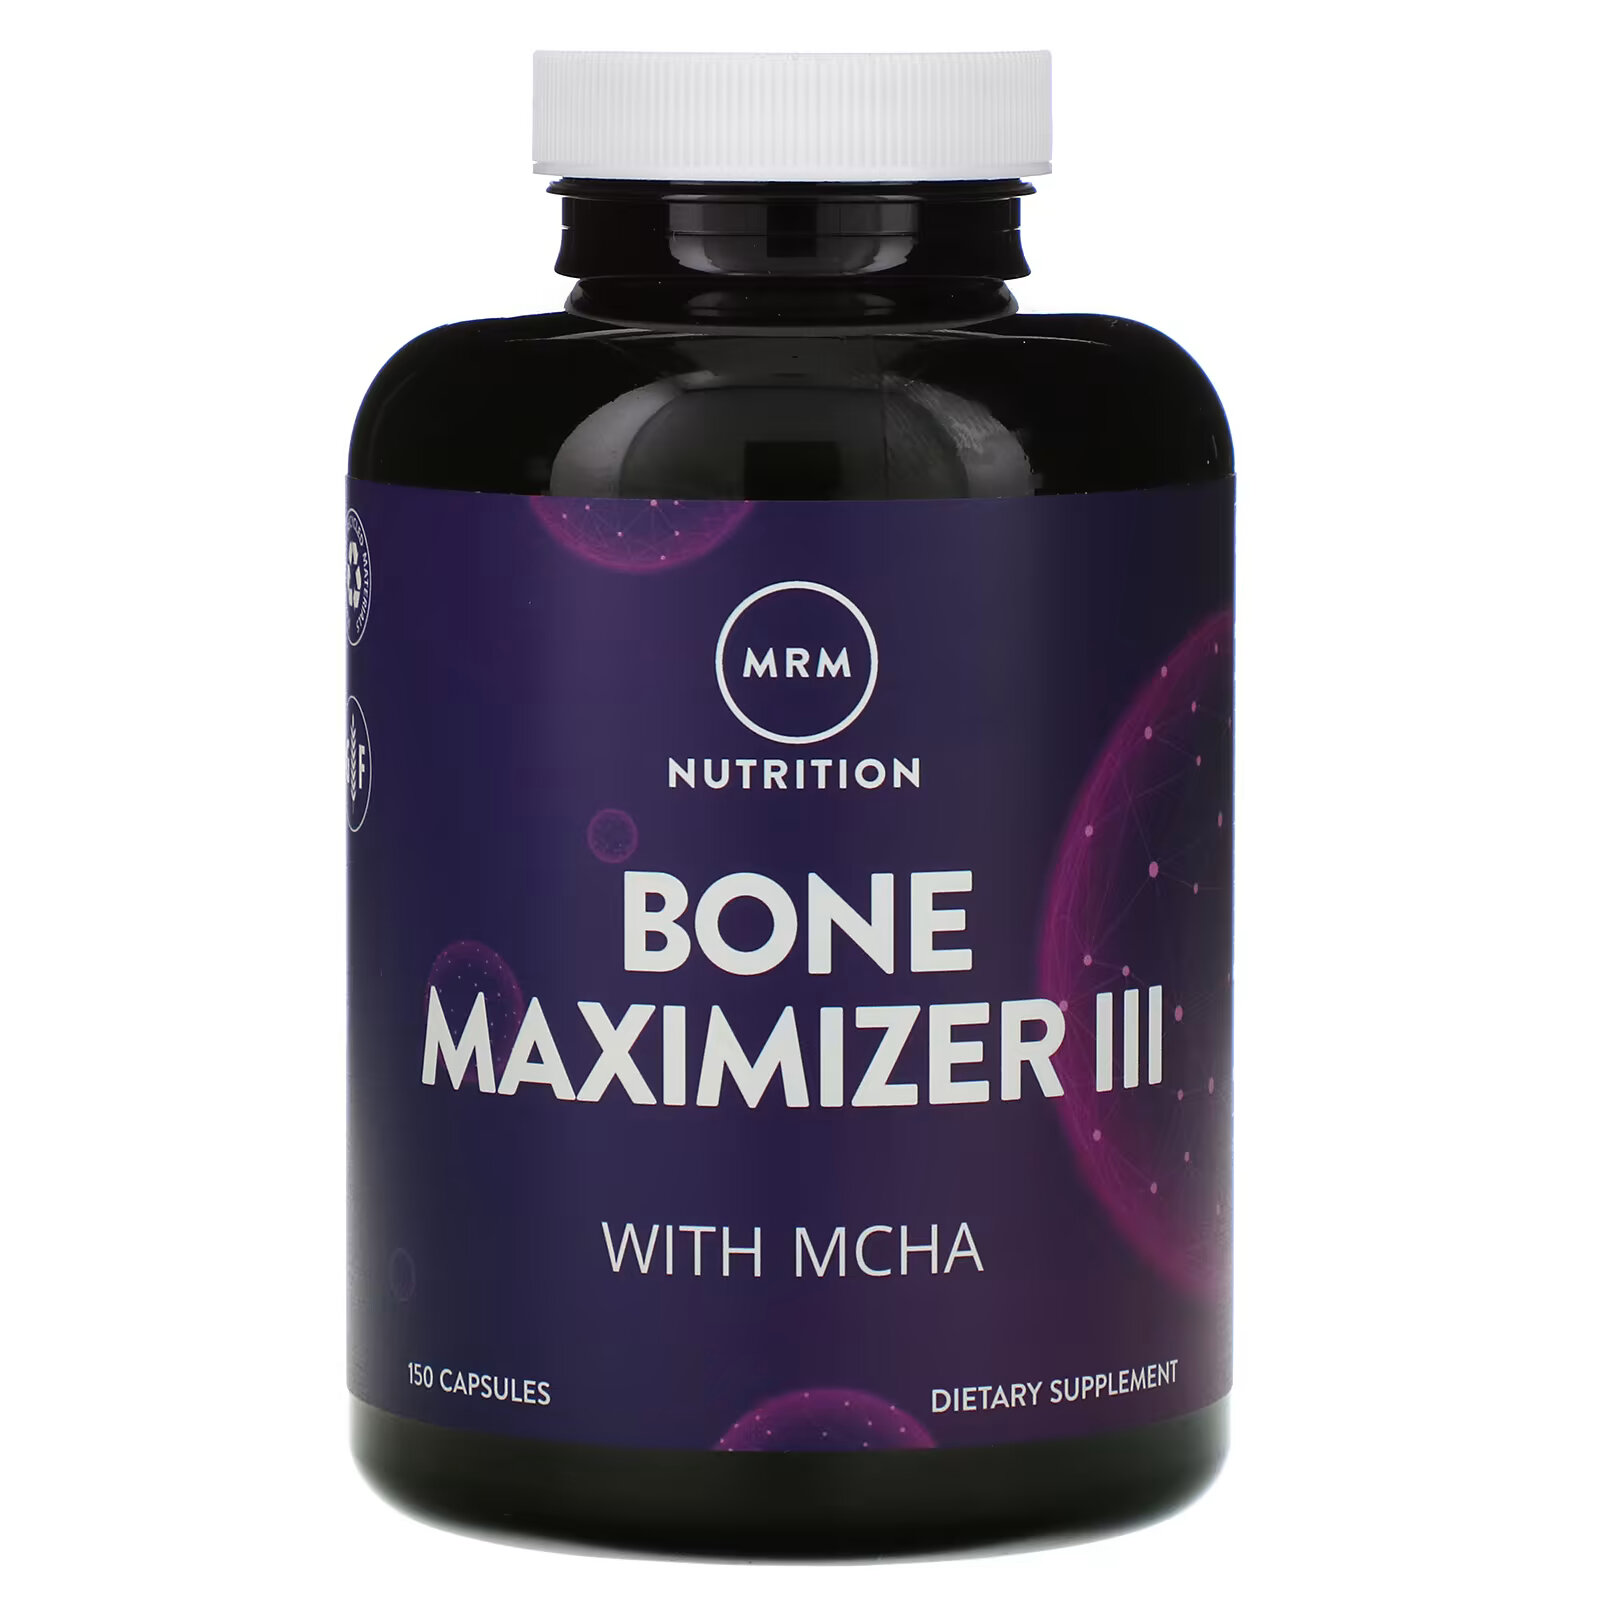 MRM Nutrition, Nutrition, Bone Maximizer III с МКГА, 150 капсул mrm nutrition bone maximizer iii с мкга 150 капсул